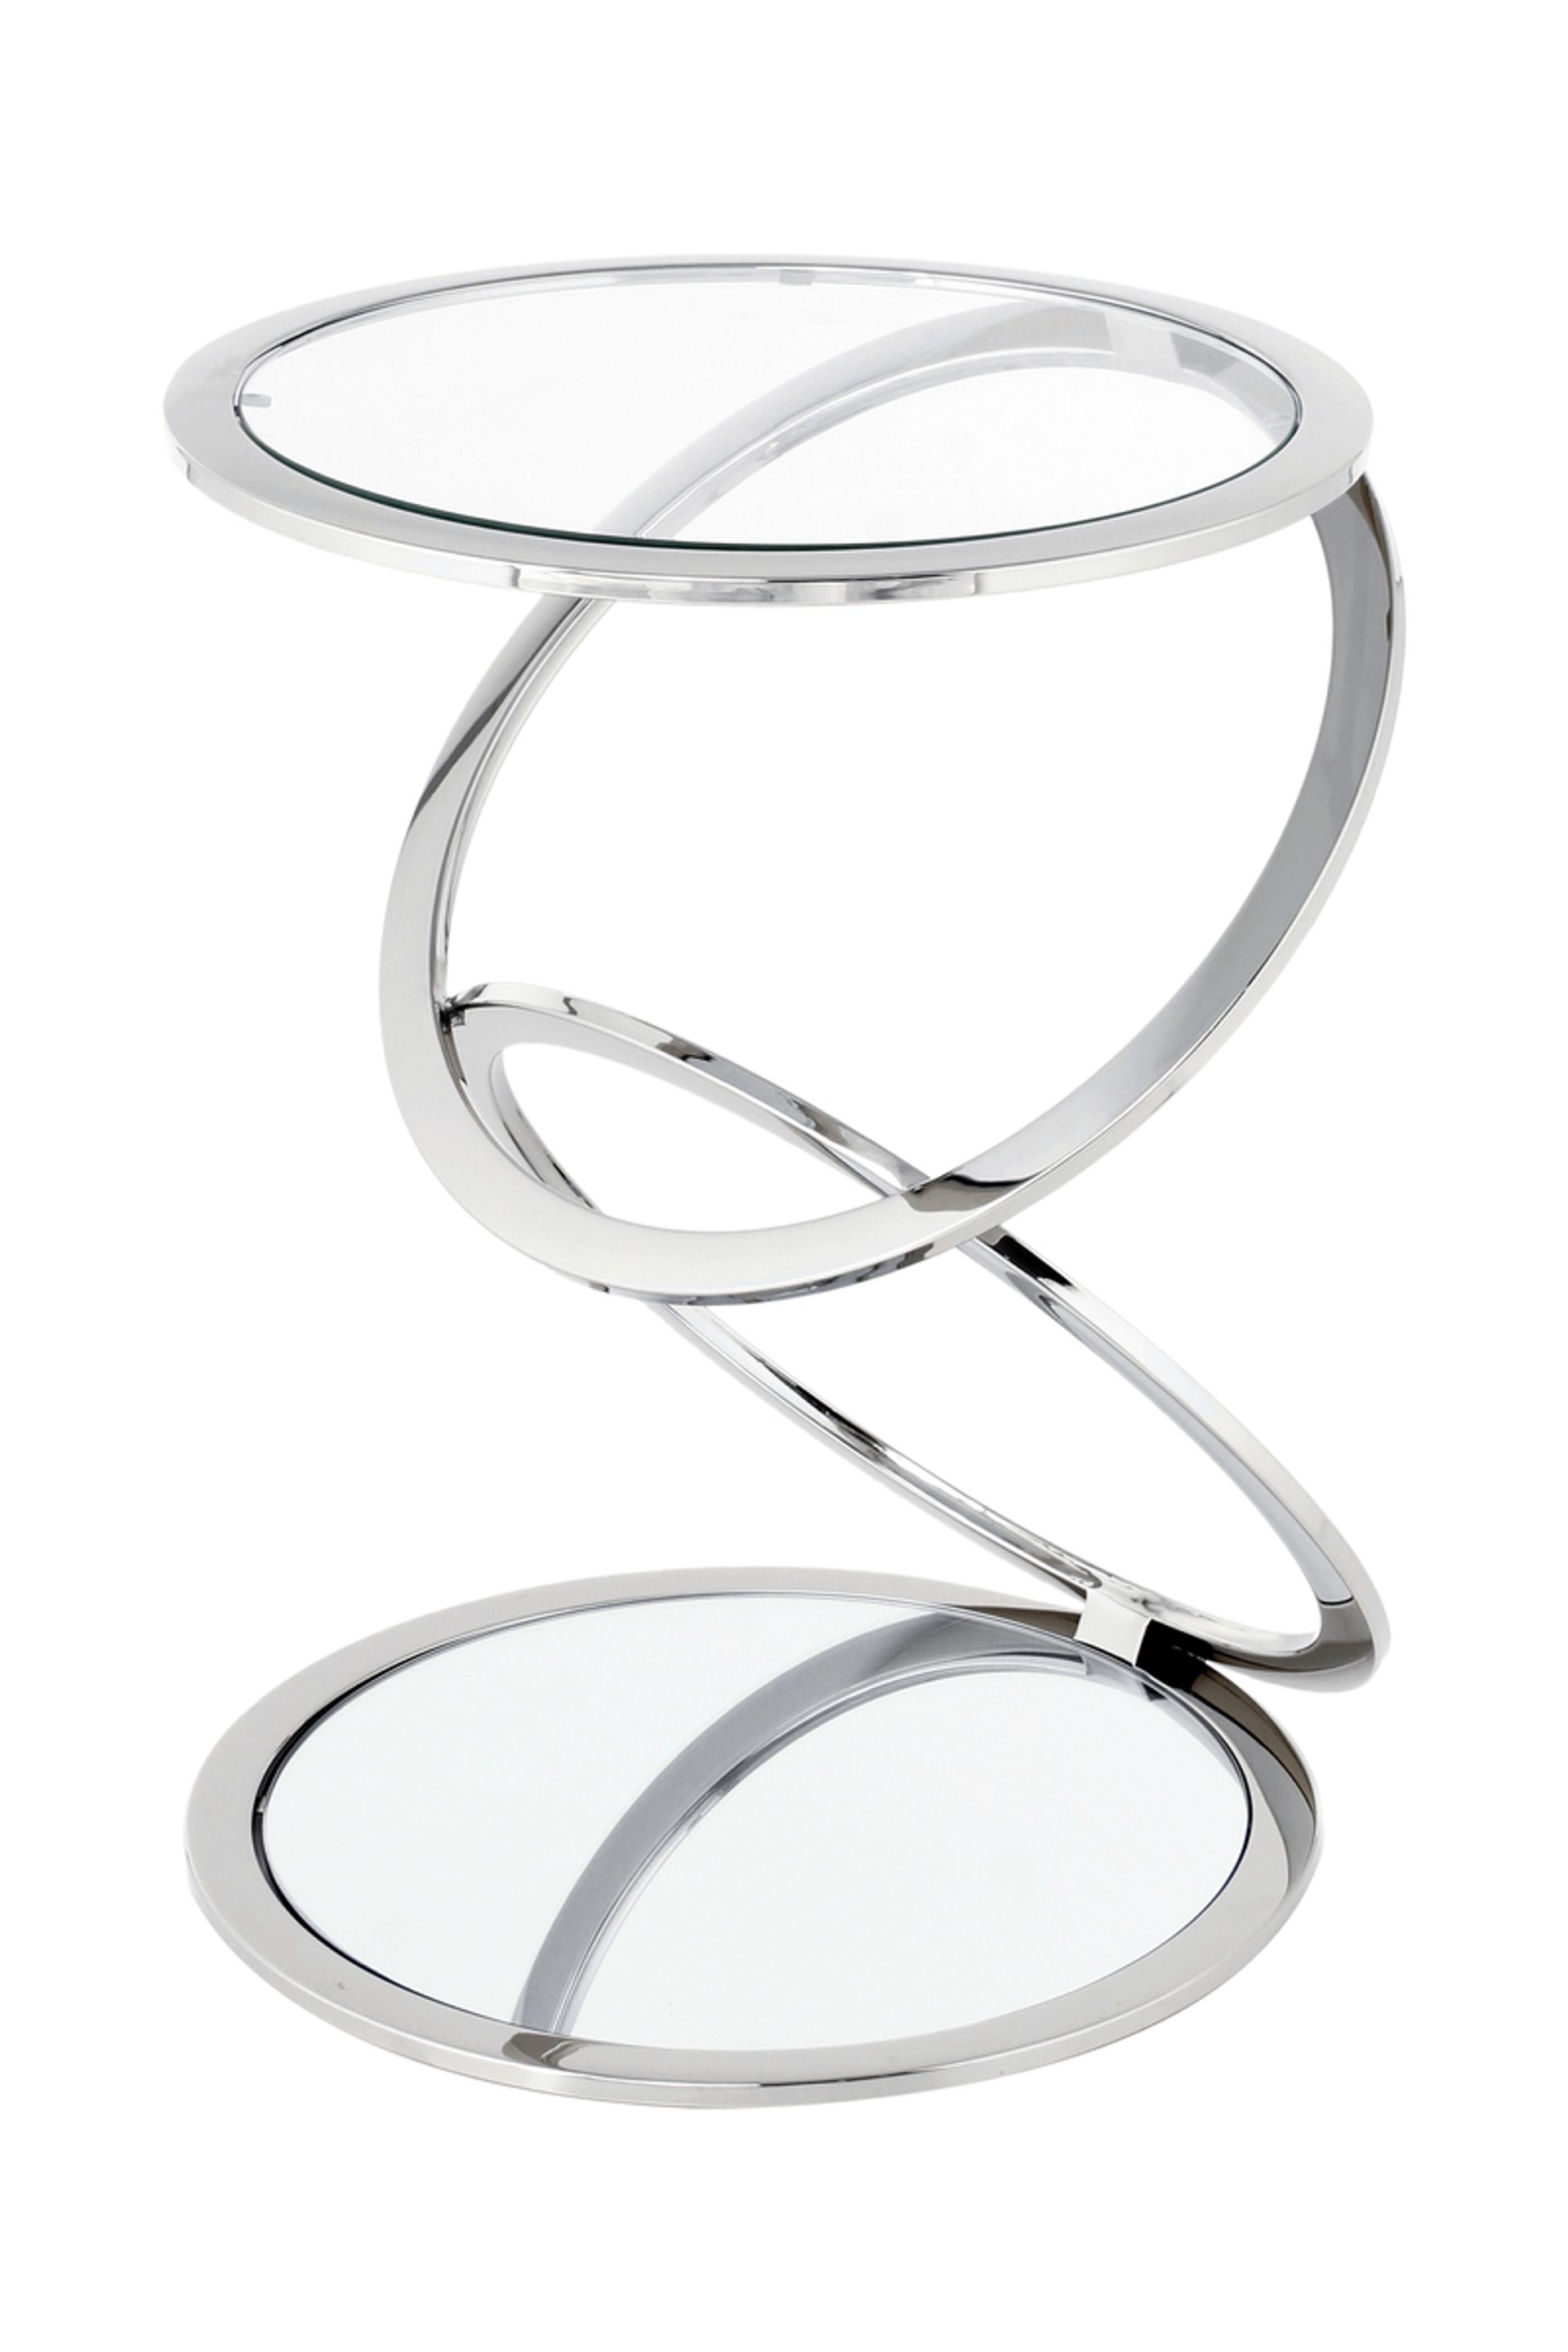 Beistelltisch Spiral 525 Silber - 40 cm (L) x 40 cm (B) x 55 cm (H)